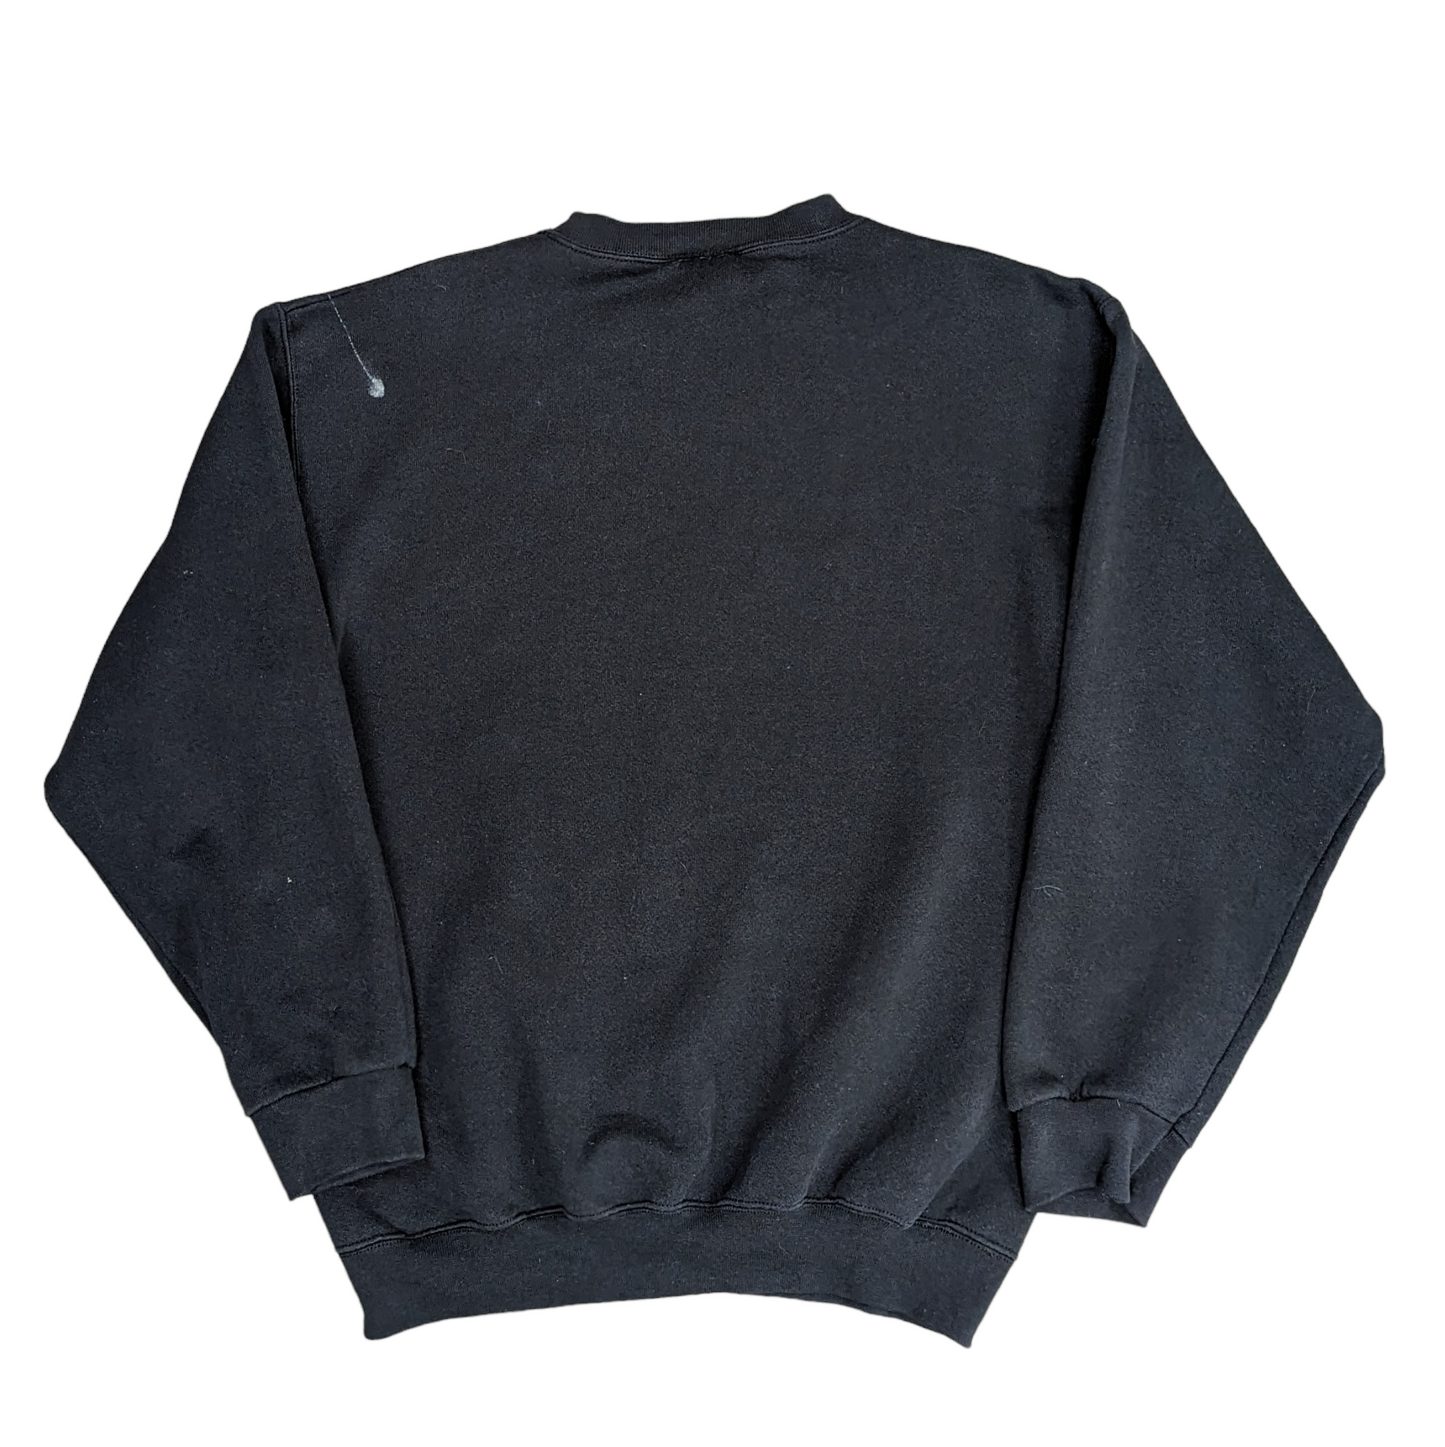 90s Reebok Sweatshirt Size M